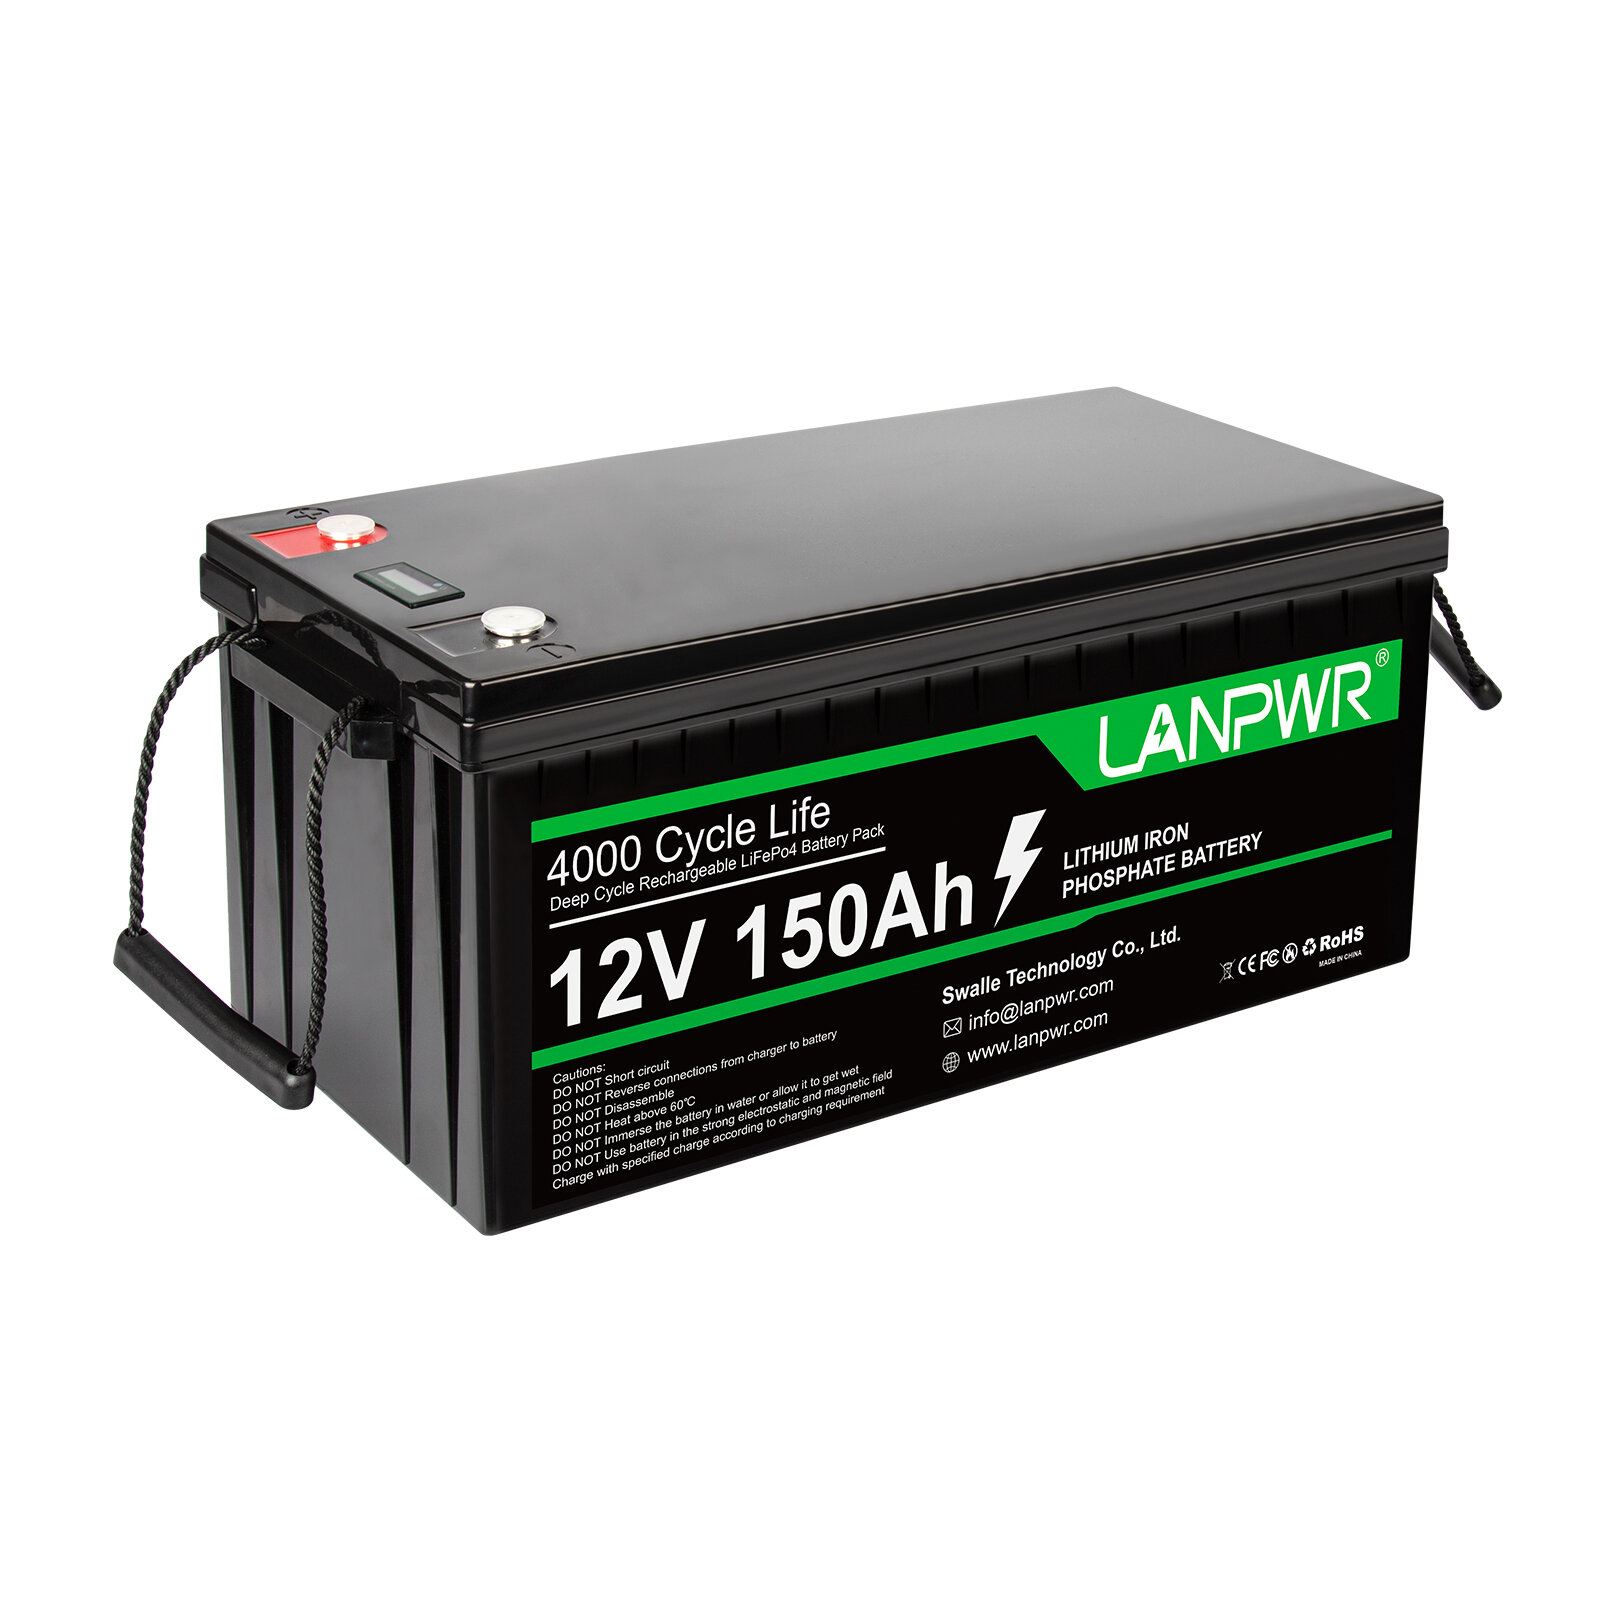 [EU Direct] Batería LANPWR LiFePO4 de 12V y 150Ah, con una capacidad de 1920Wh y una batería de litio integrada de 100A BMS, resistente al agua con clasificación IP65, para reemplazar la mayoría de las fuentes de energía de respaldo, almacenamiento d